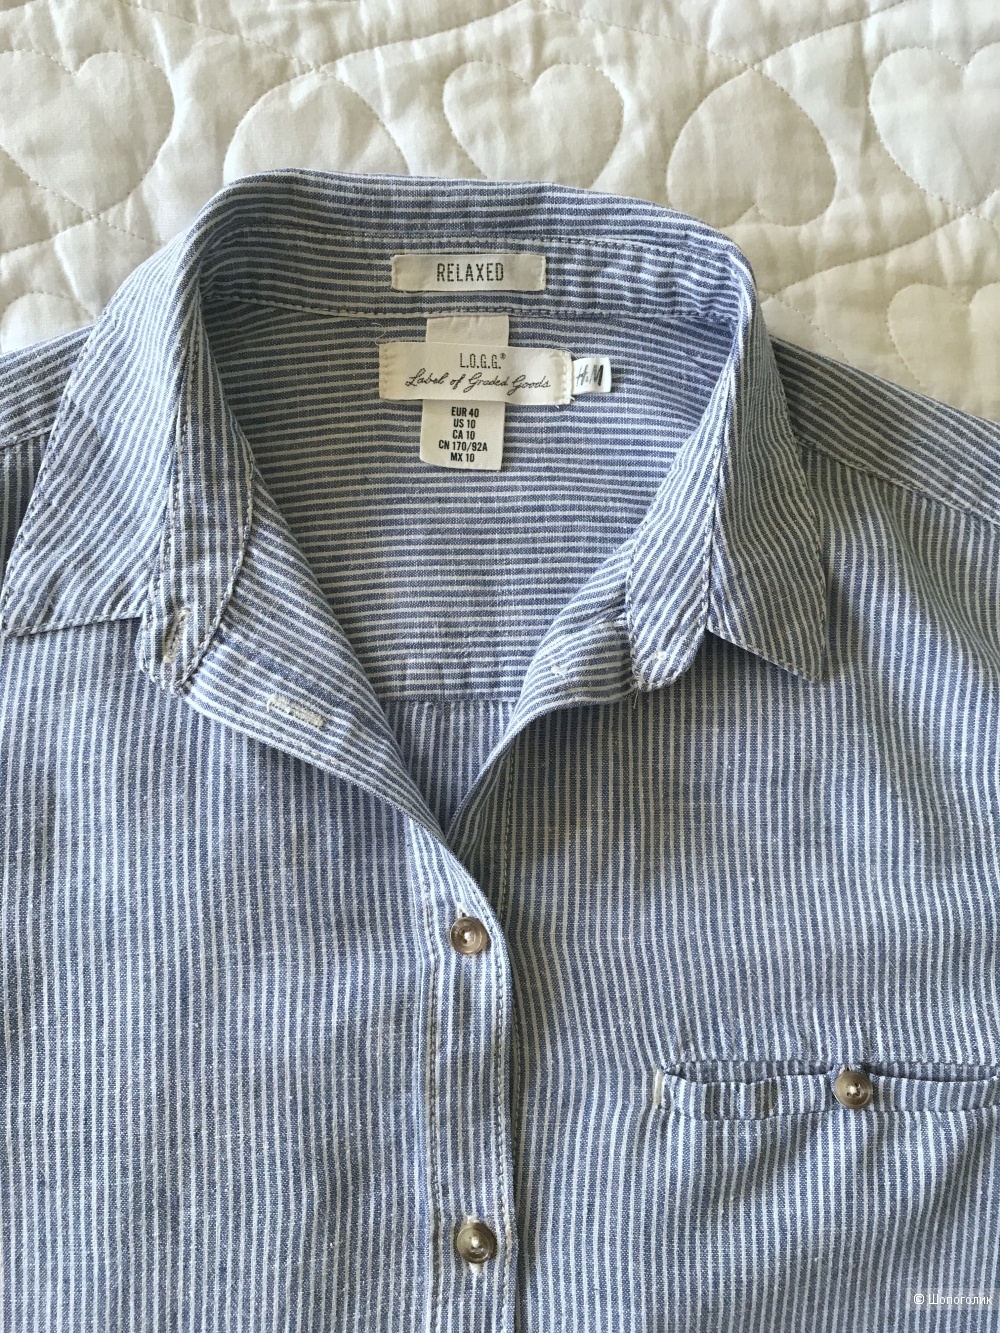 Льняная рубашка H&M размер US 10